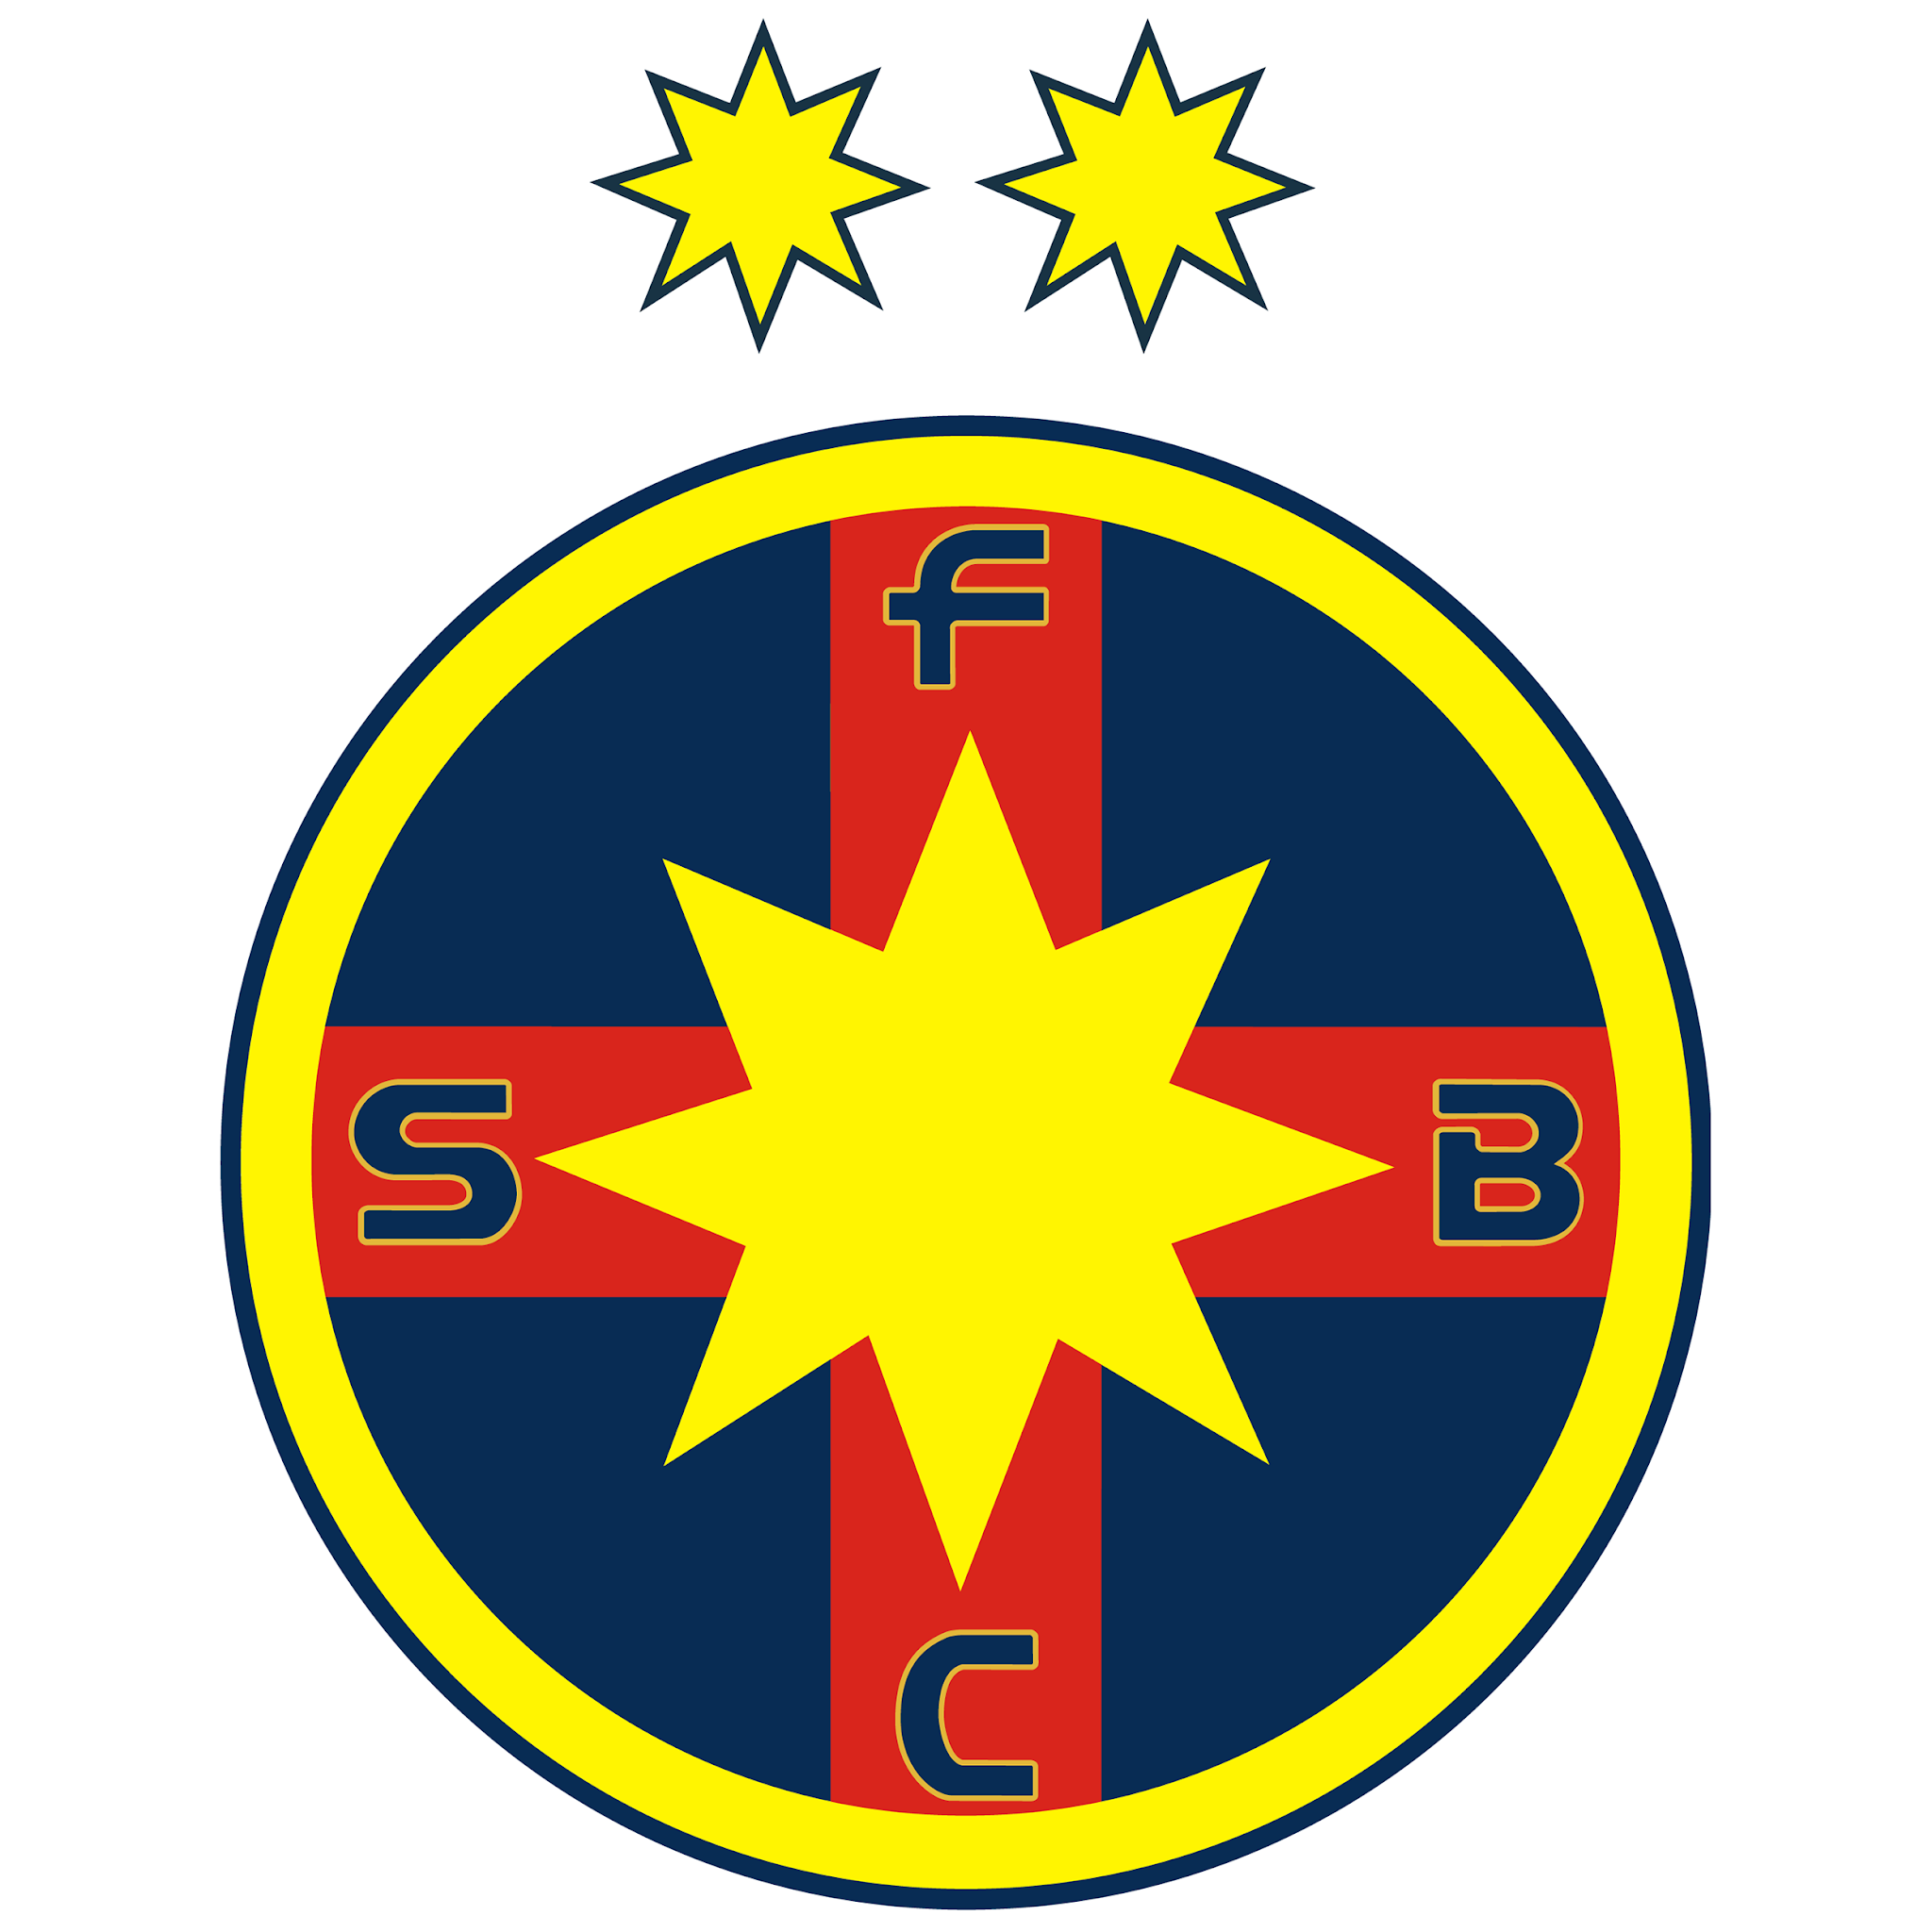 FCV Farul Constanța - Wikipedia